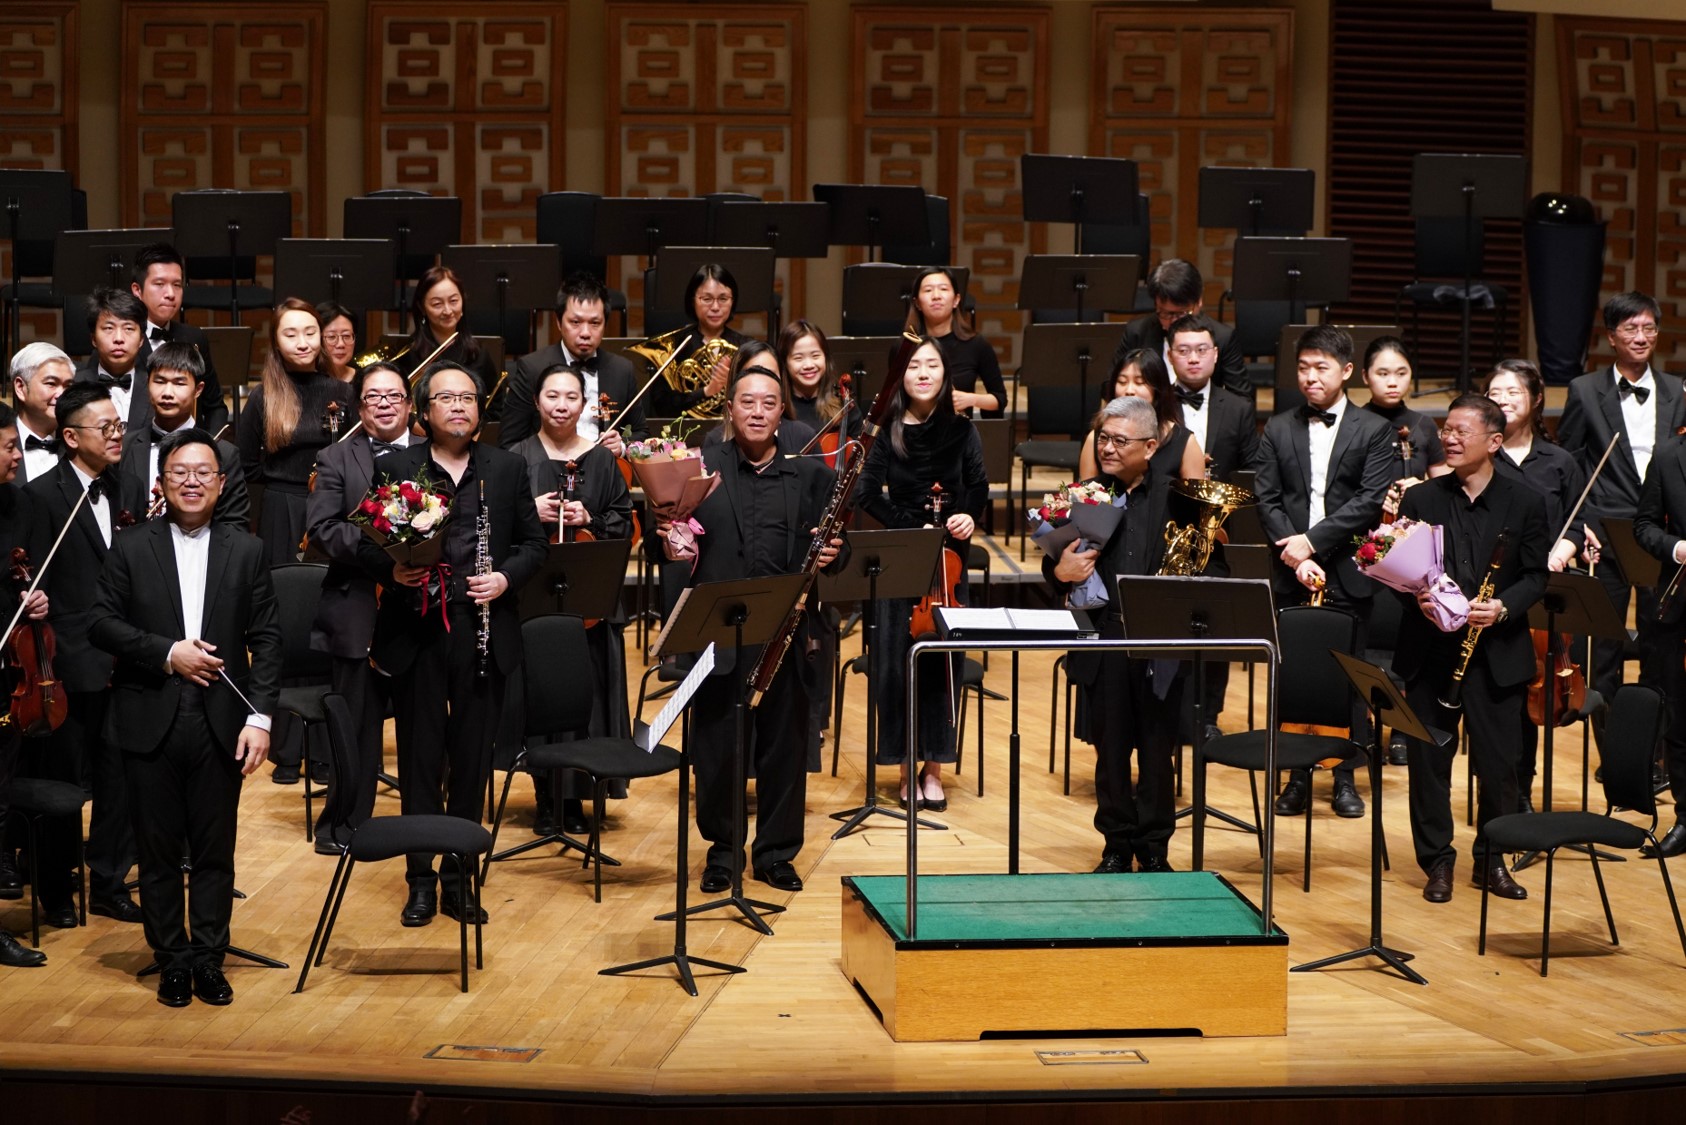 2024香港青年交响乐团周年音乐会「交响之旅」